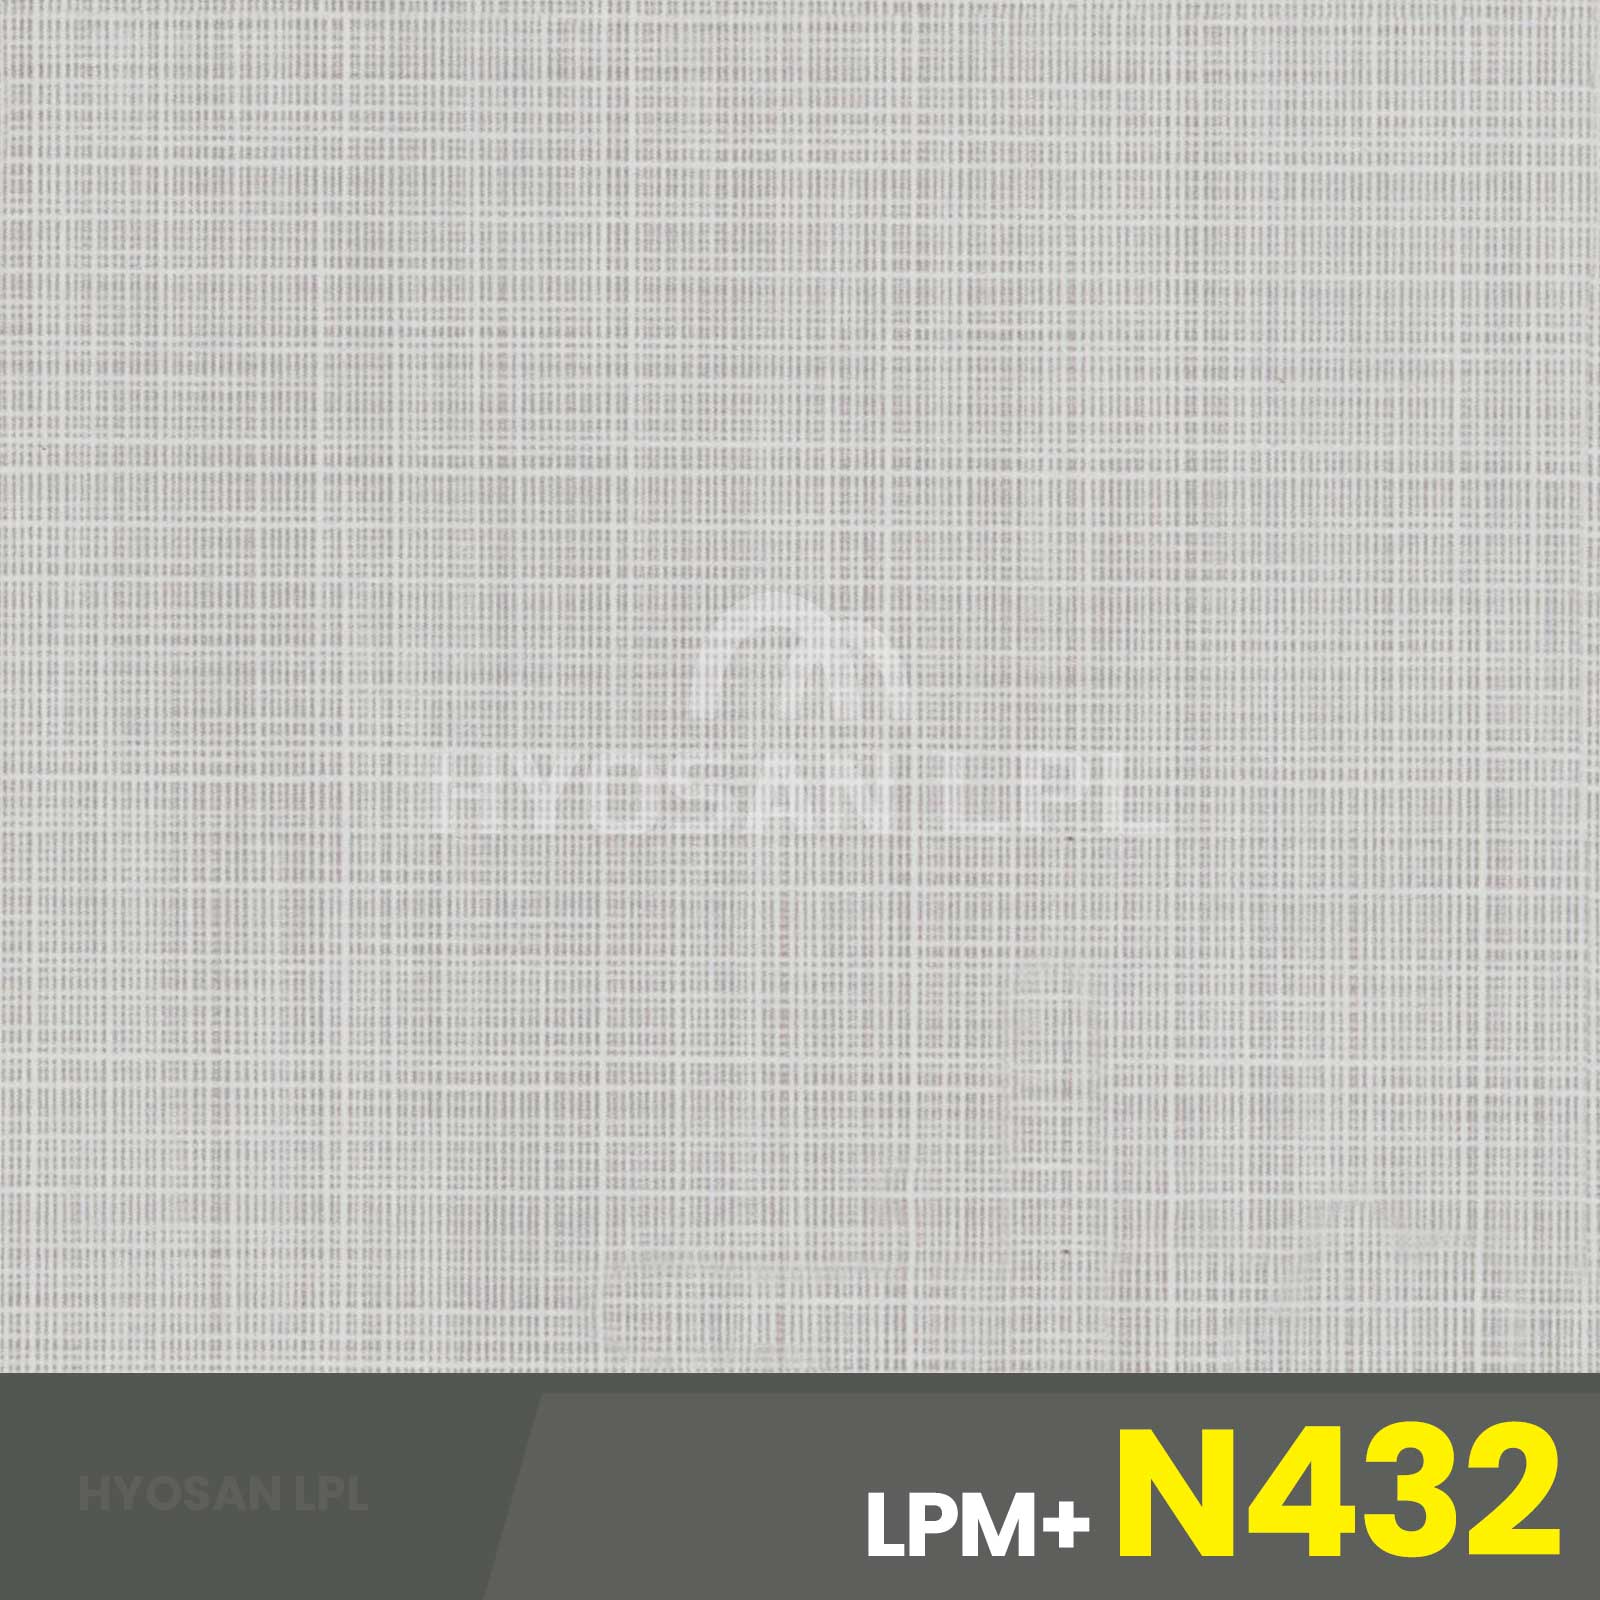 LPM+N432